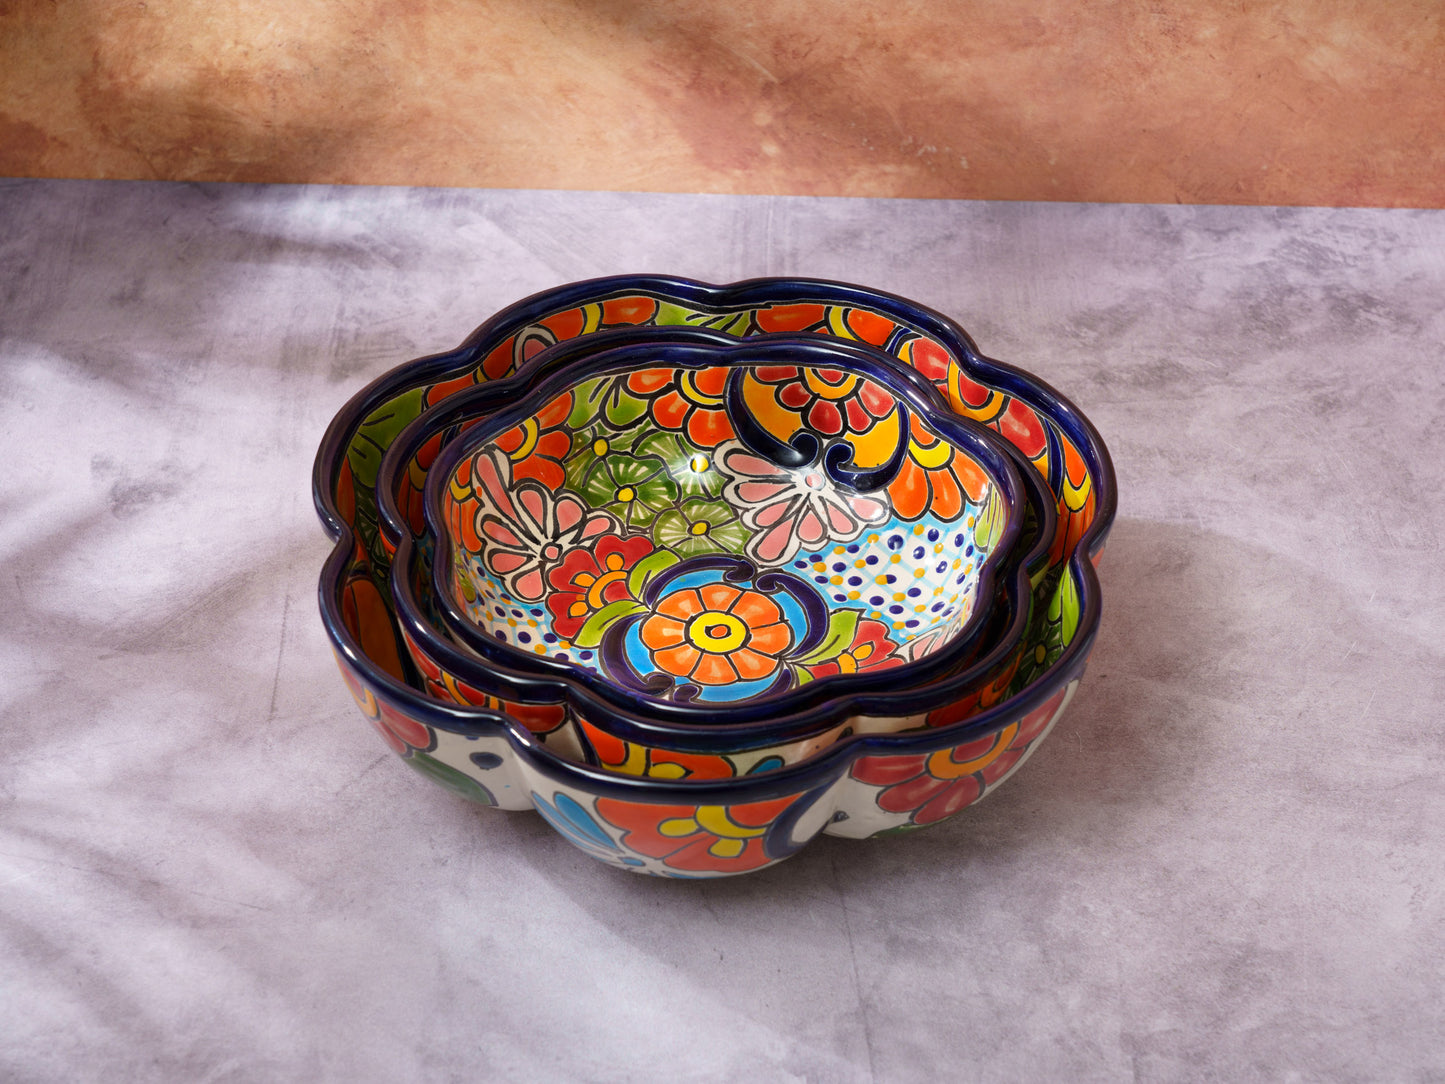 Multi Color Nesting Serving Bowl Set - 3 Piece